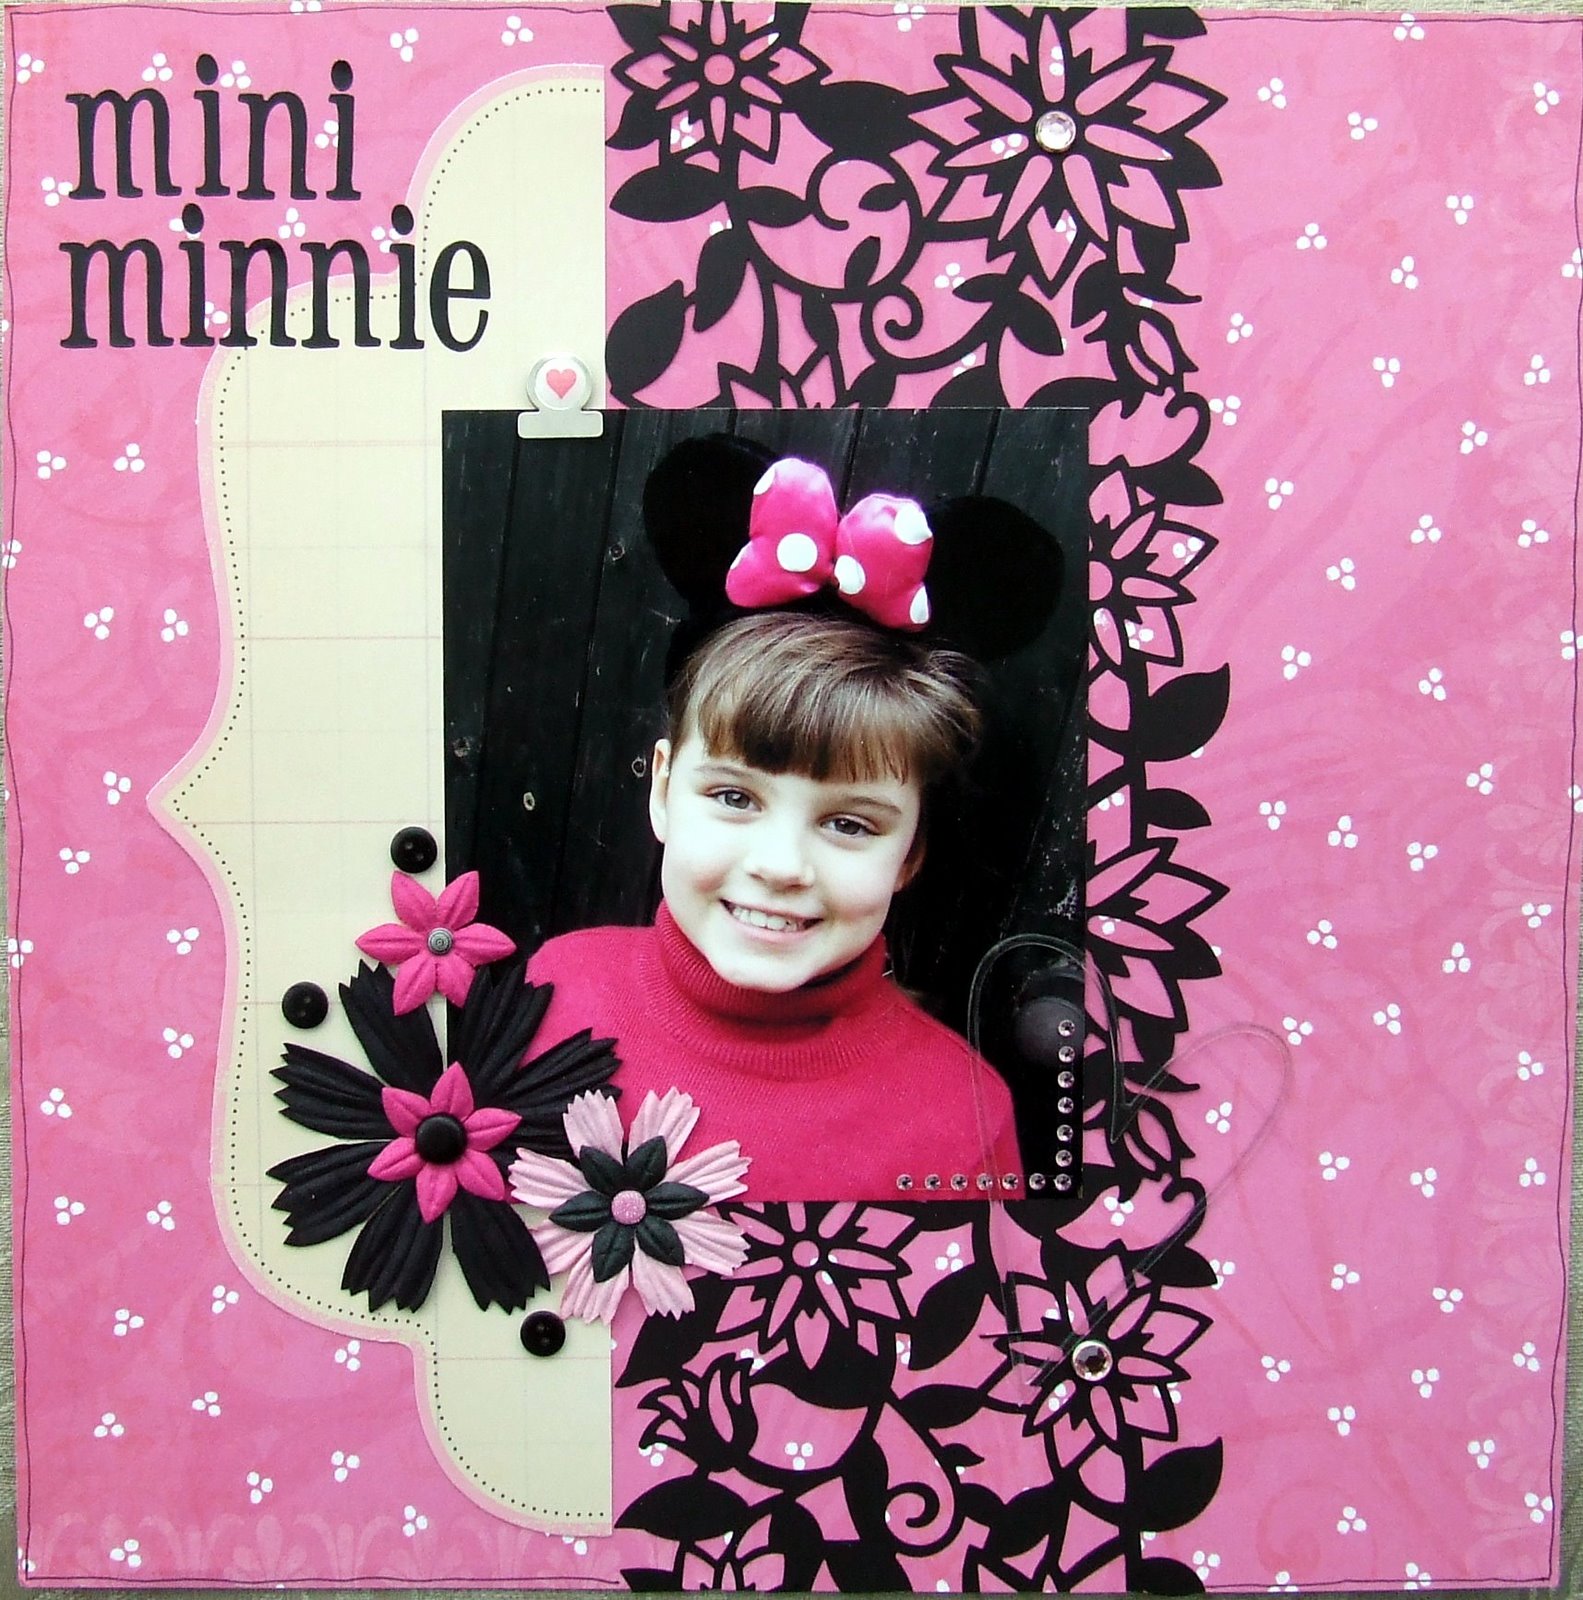 [mini+minnie.jpg]